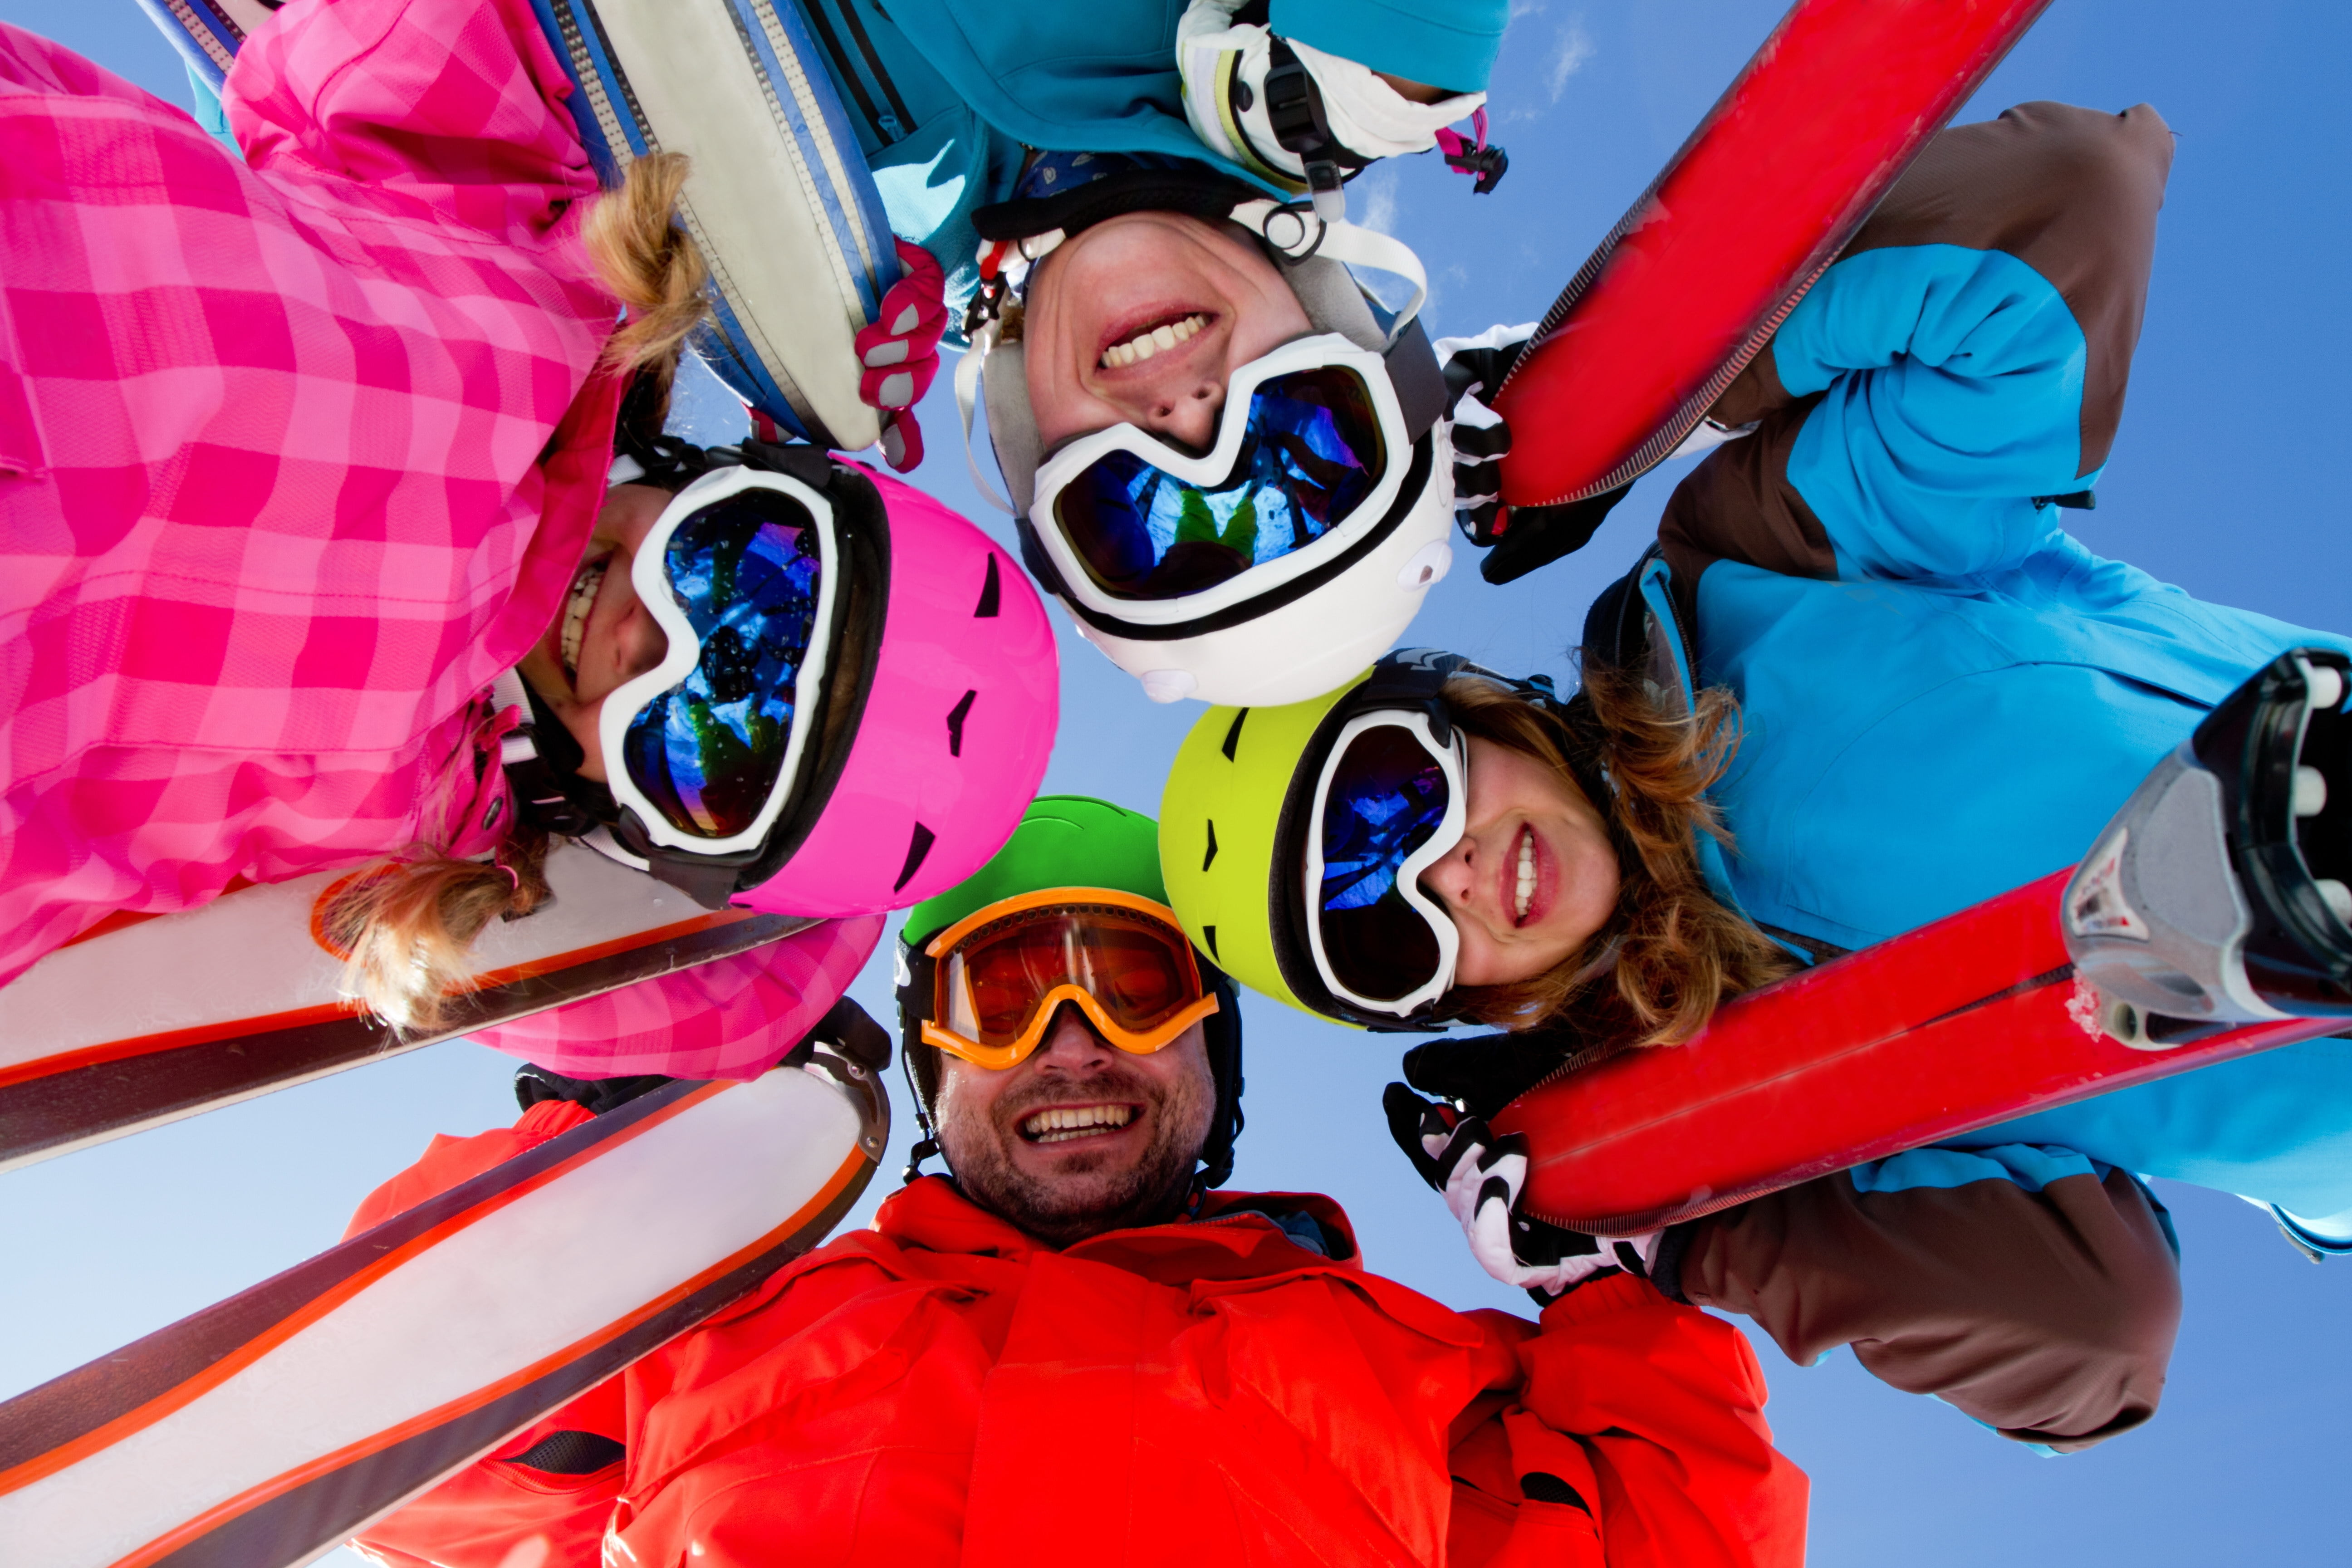 My friend skis. Горнолыжники и сноубордисты. Сноуборд компания. Счастливые сноубордисты. Семья горнолыжников.